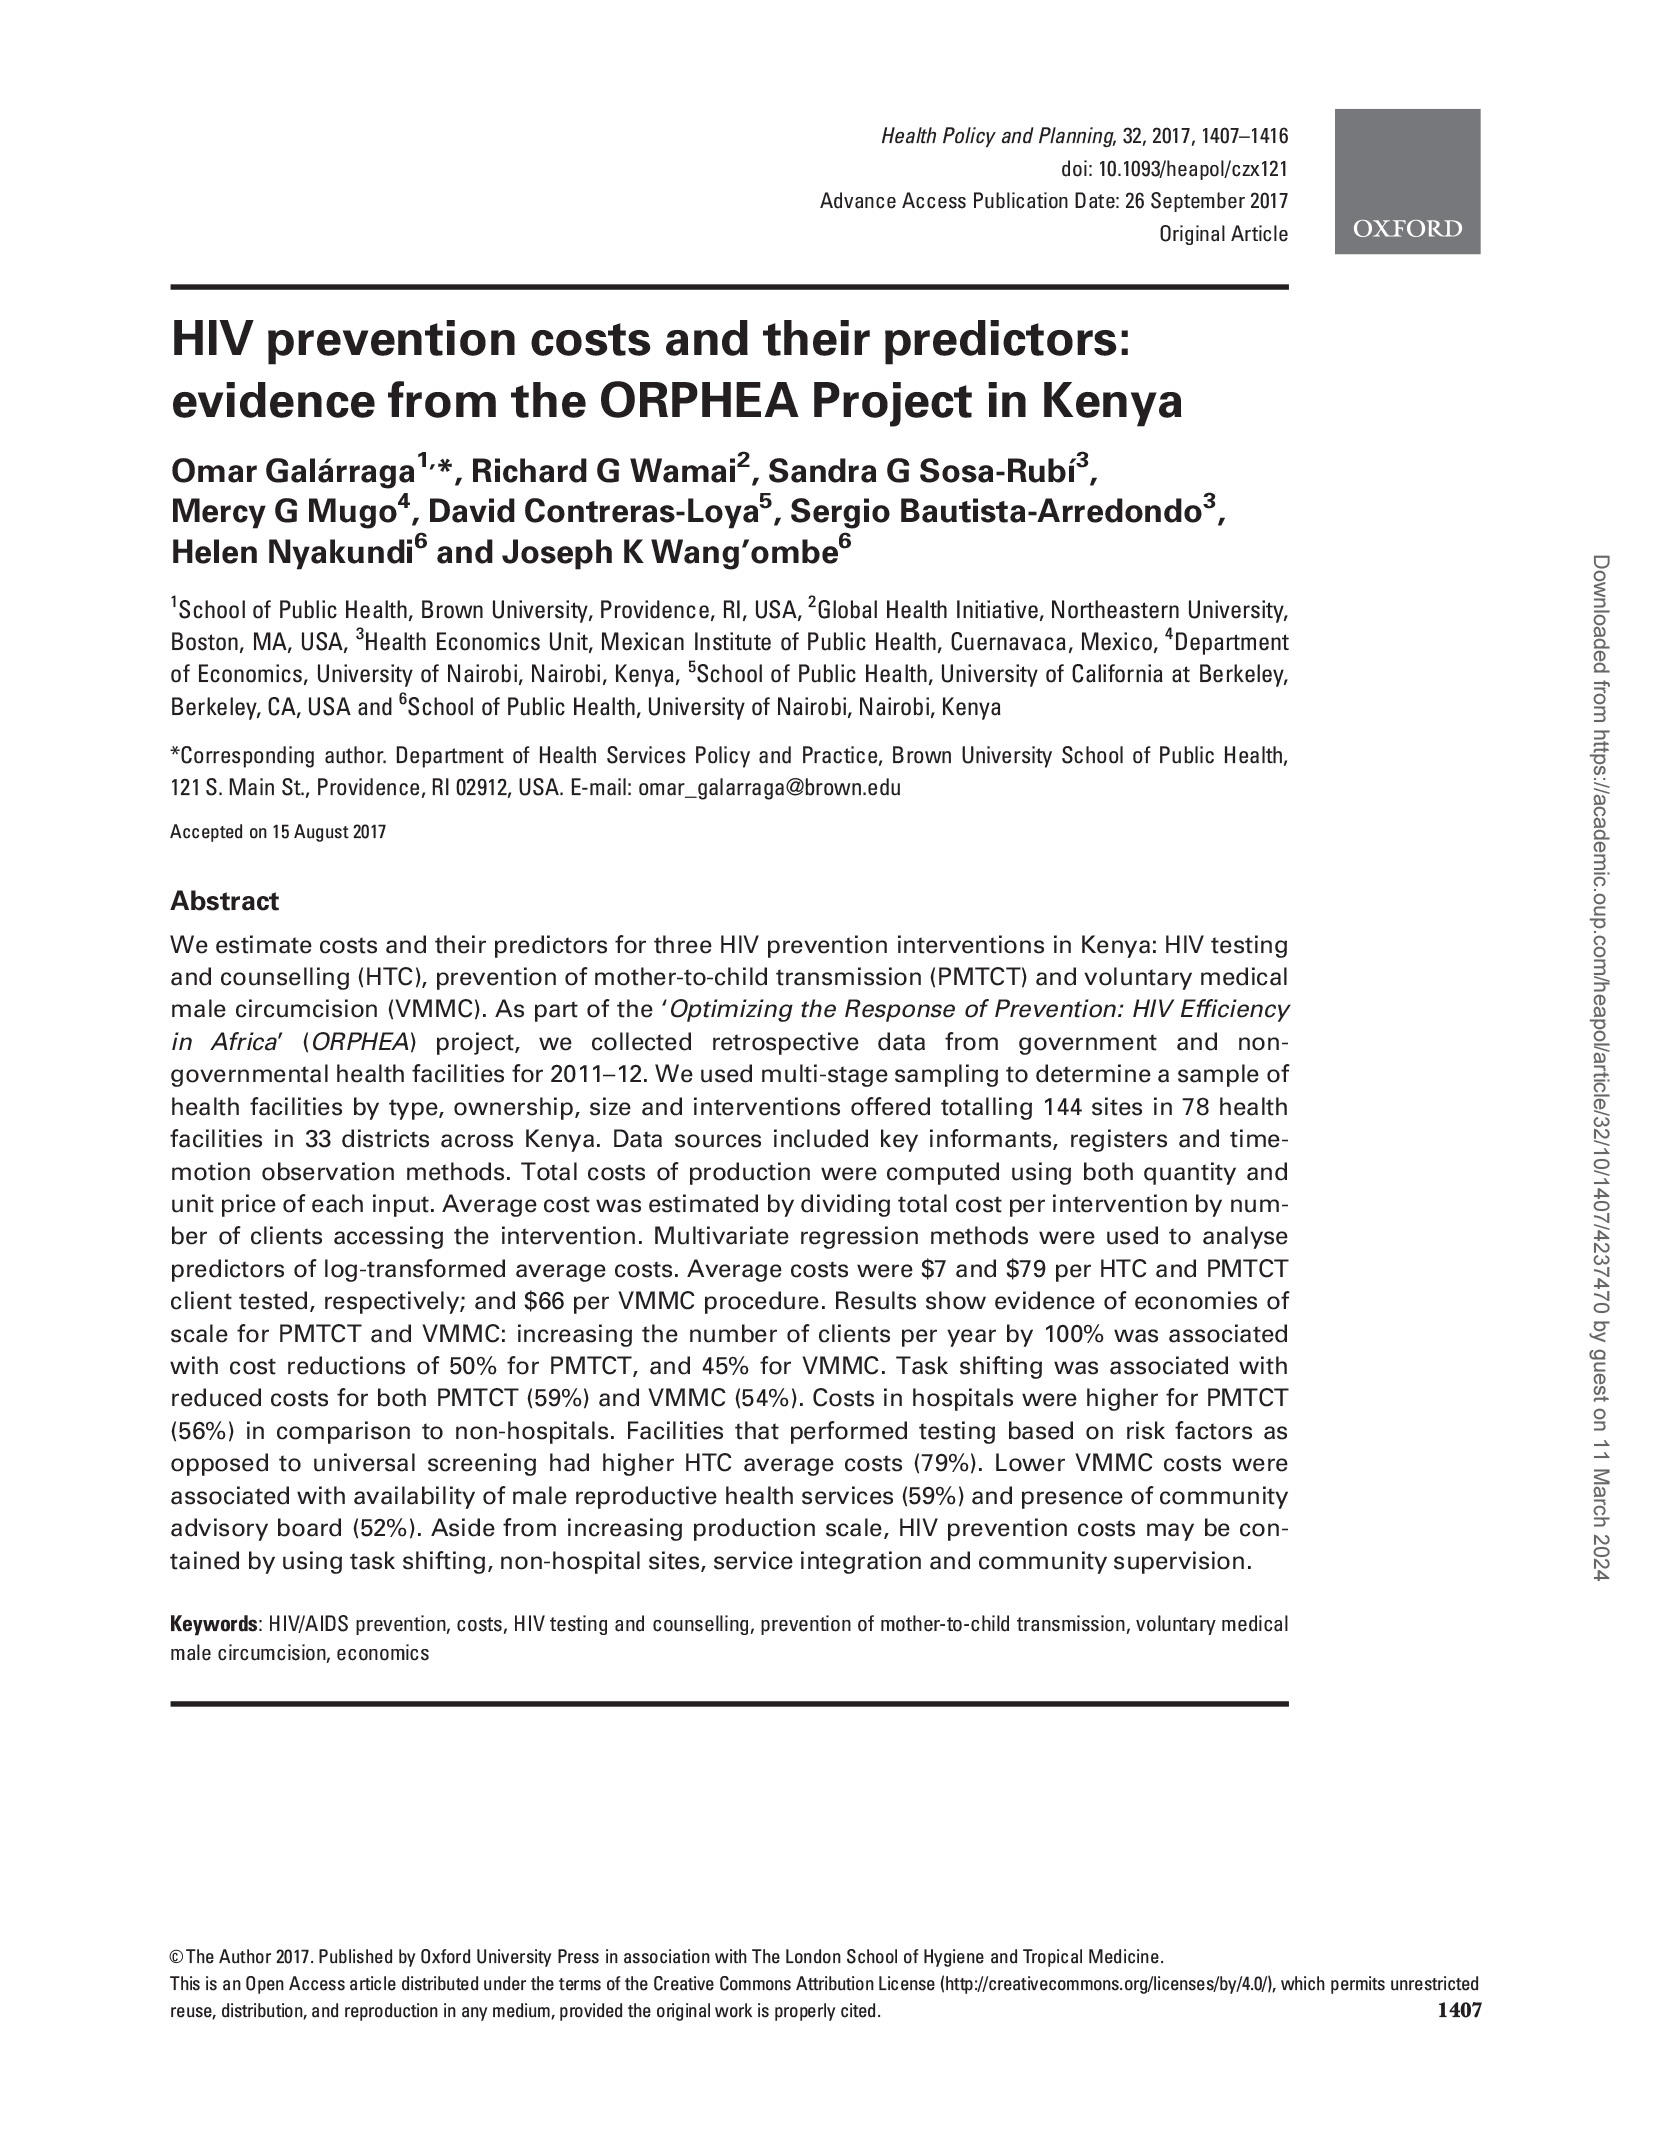 Custos de prevenção do VIH e seus preditores: Evidências do Projeto ORPHEA no Quénia - capa